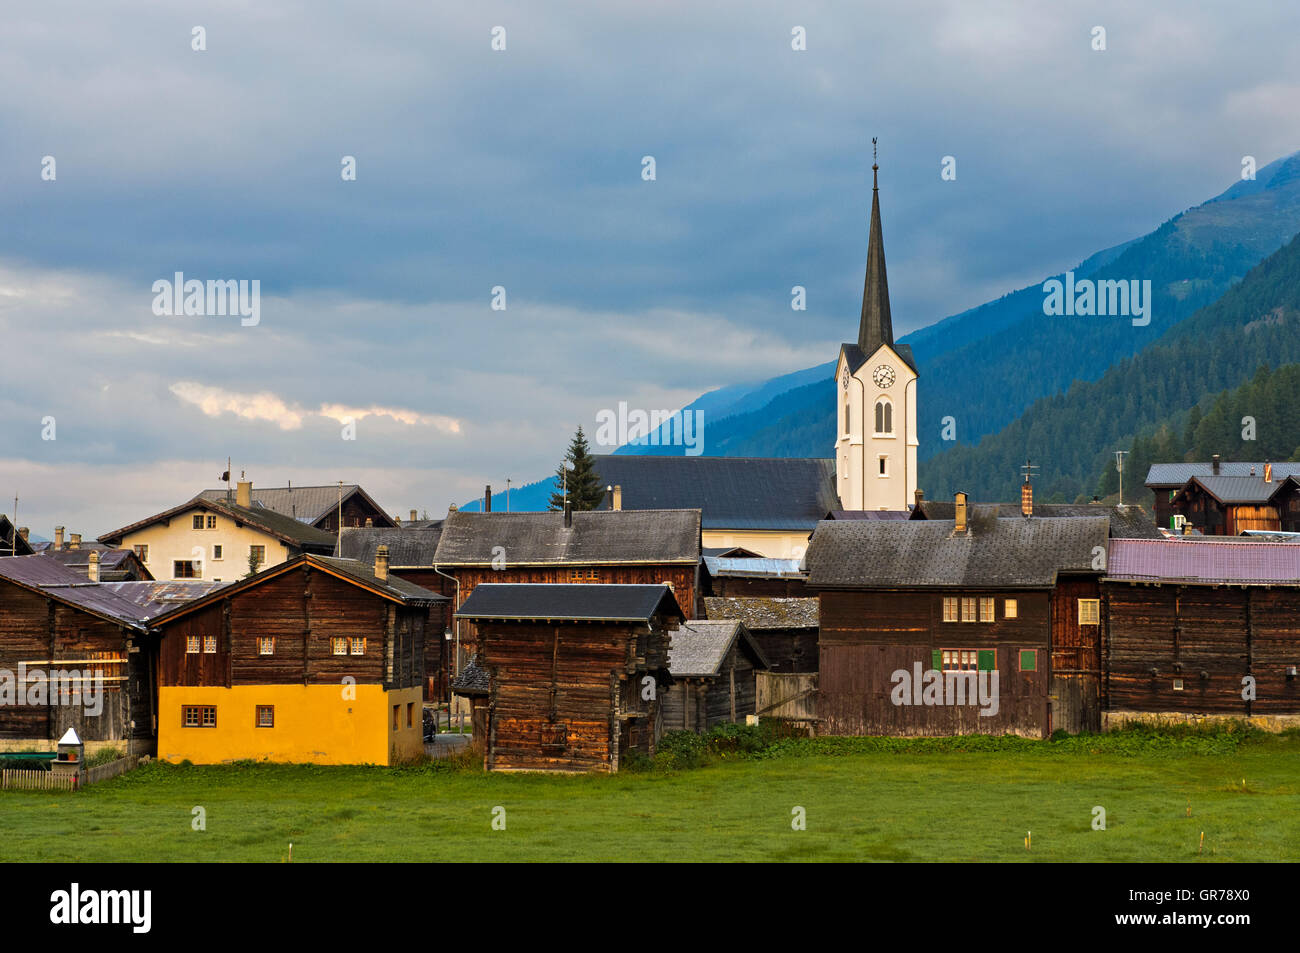 Chalets Village Ulrichen, Obergoms, Valais, Switzerland Stock Photo